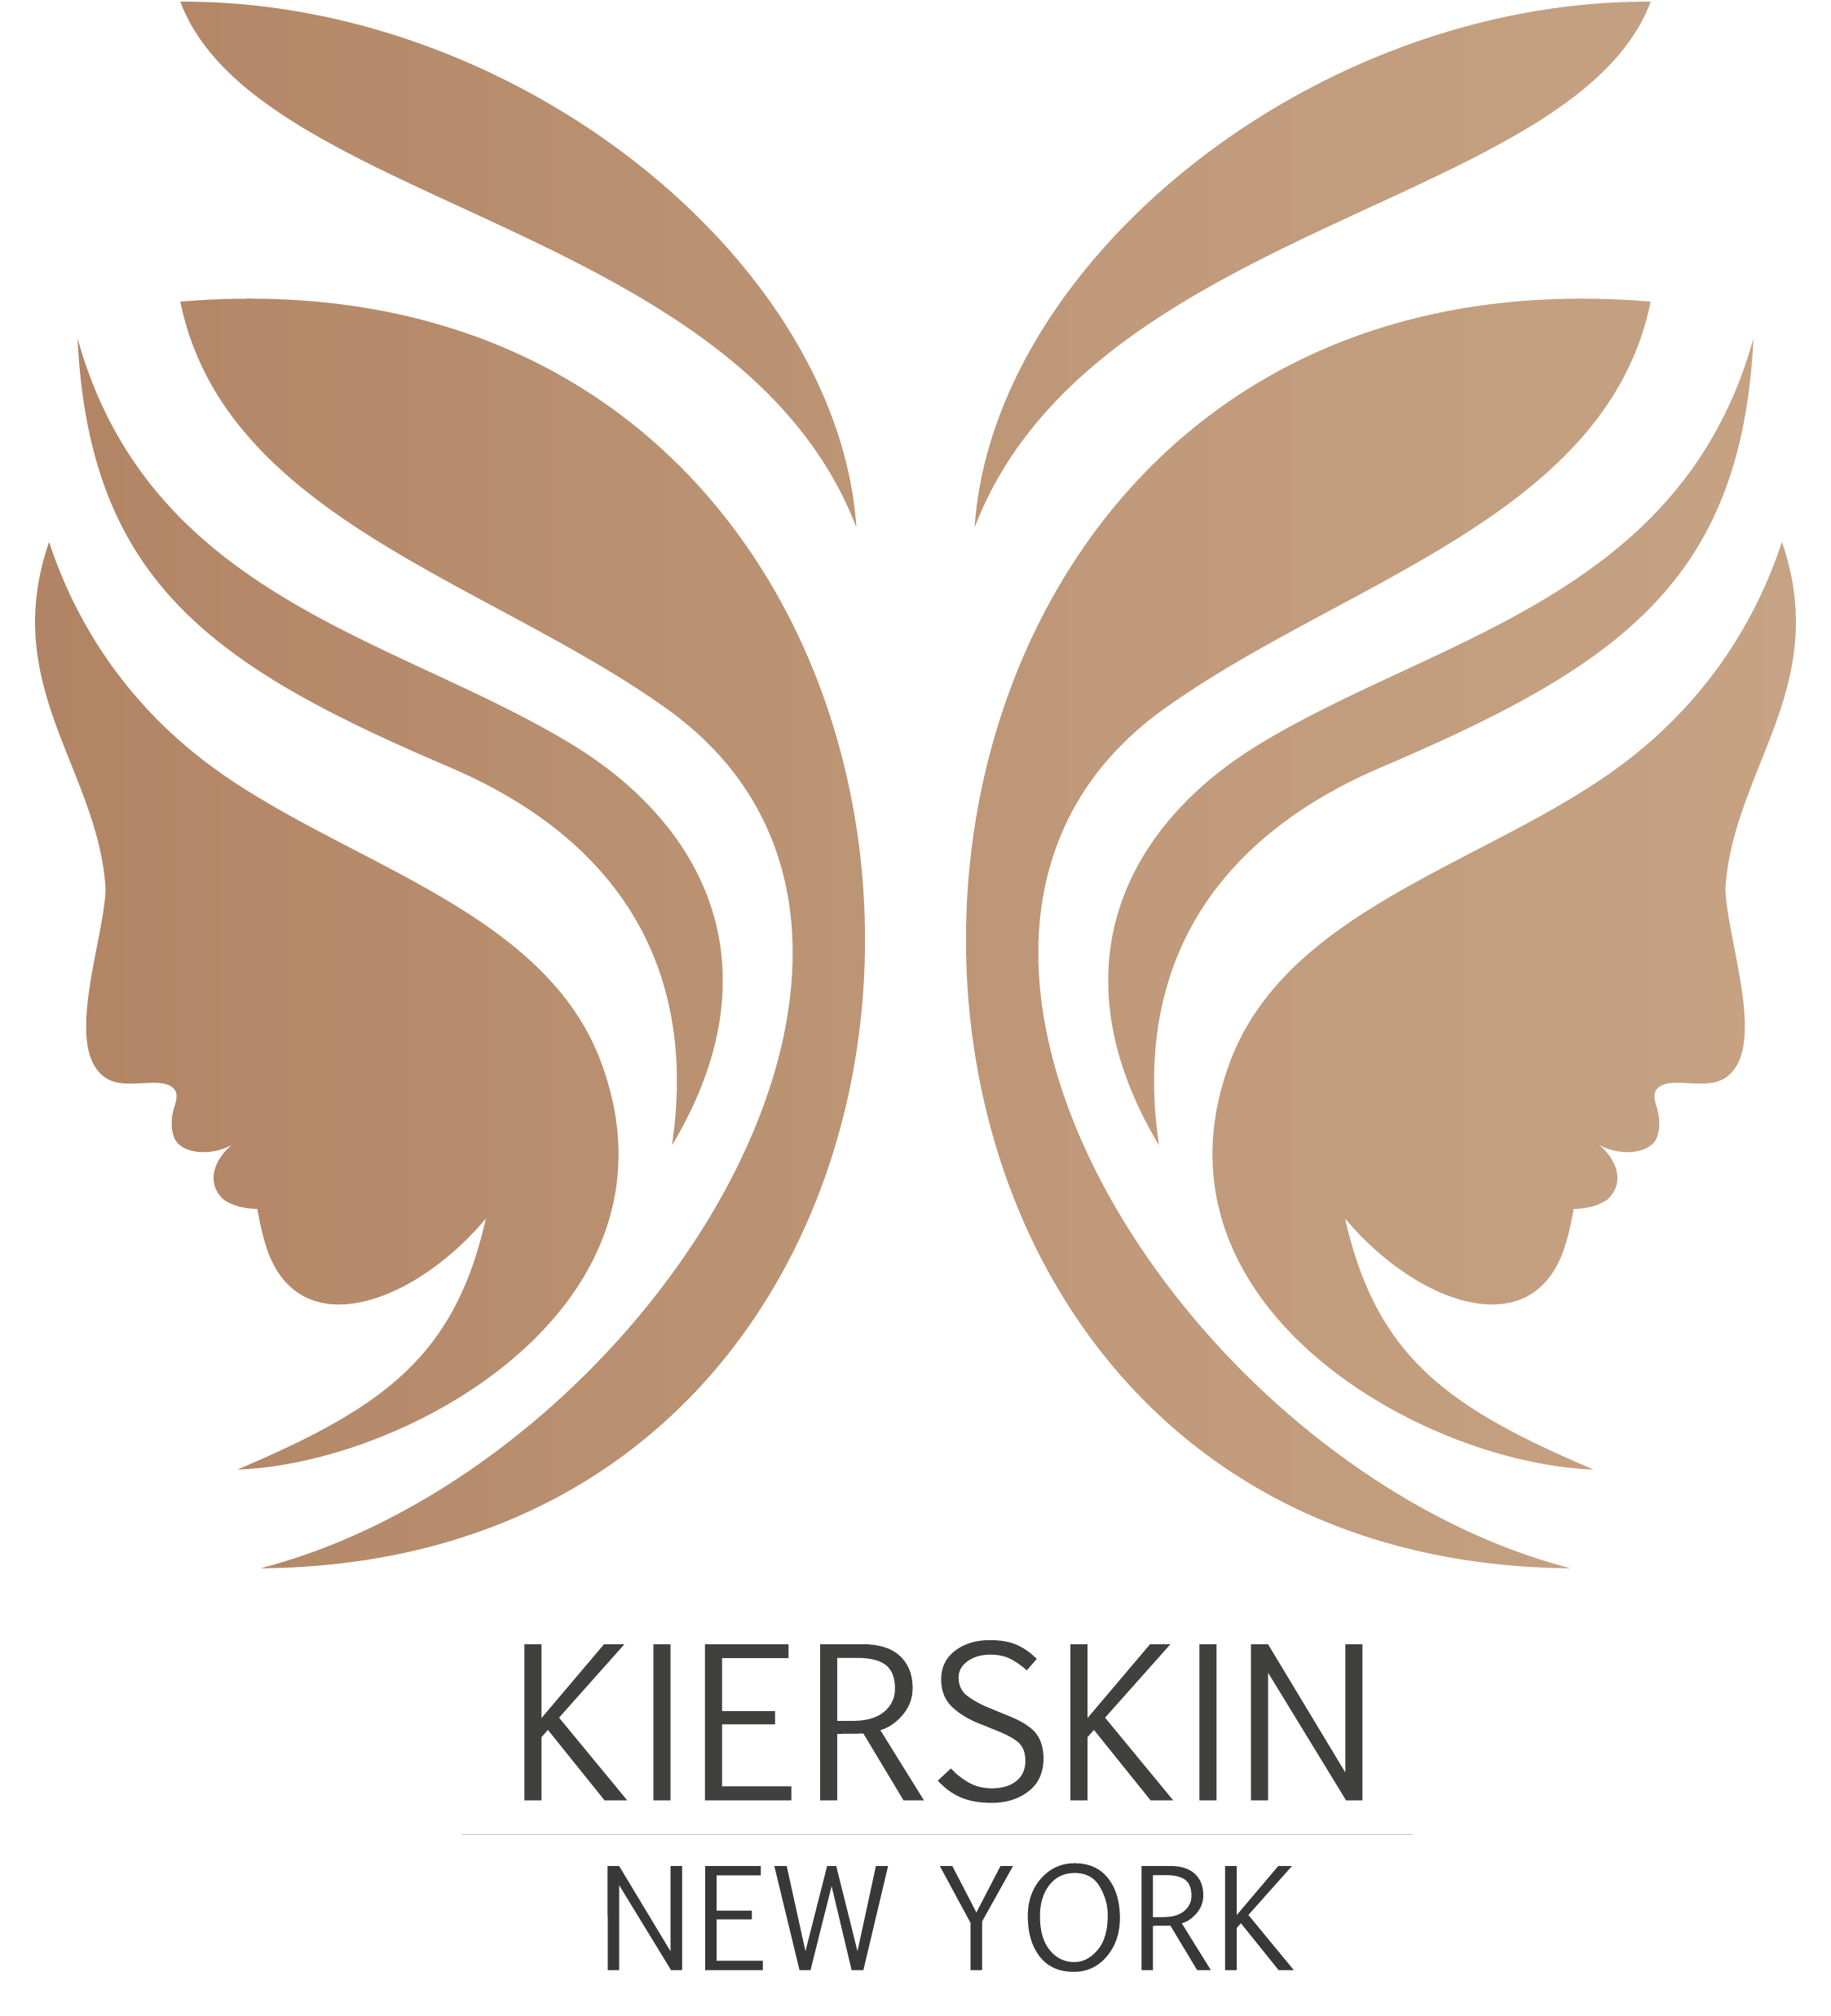 Welcome to KierSkin